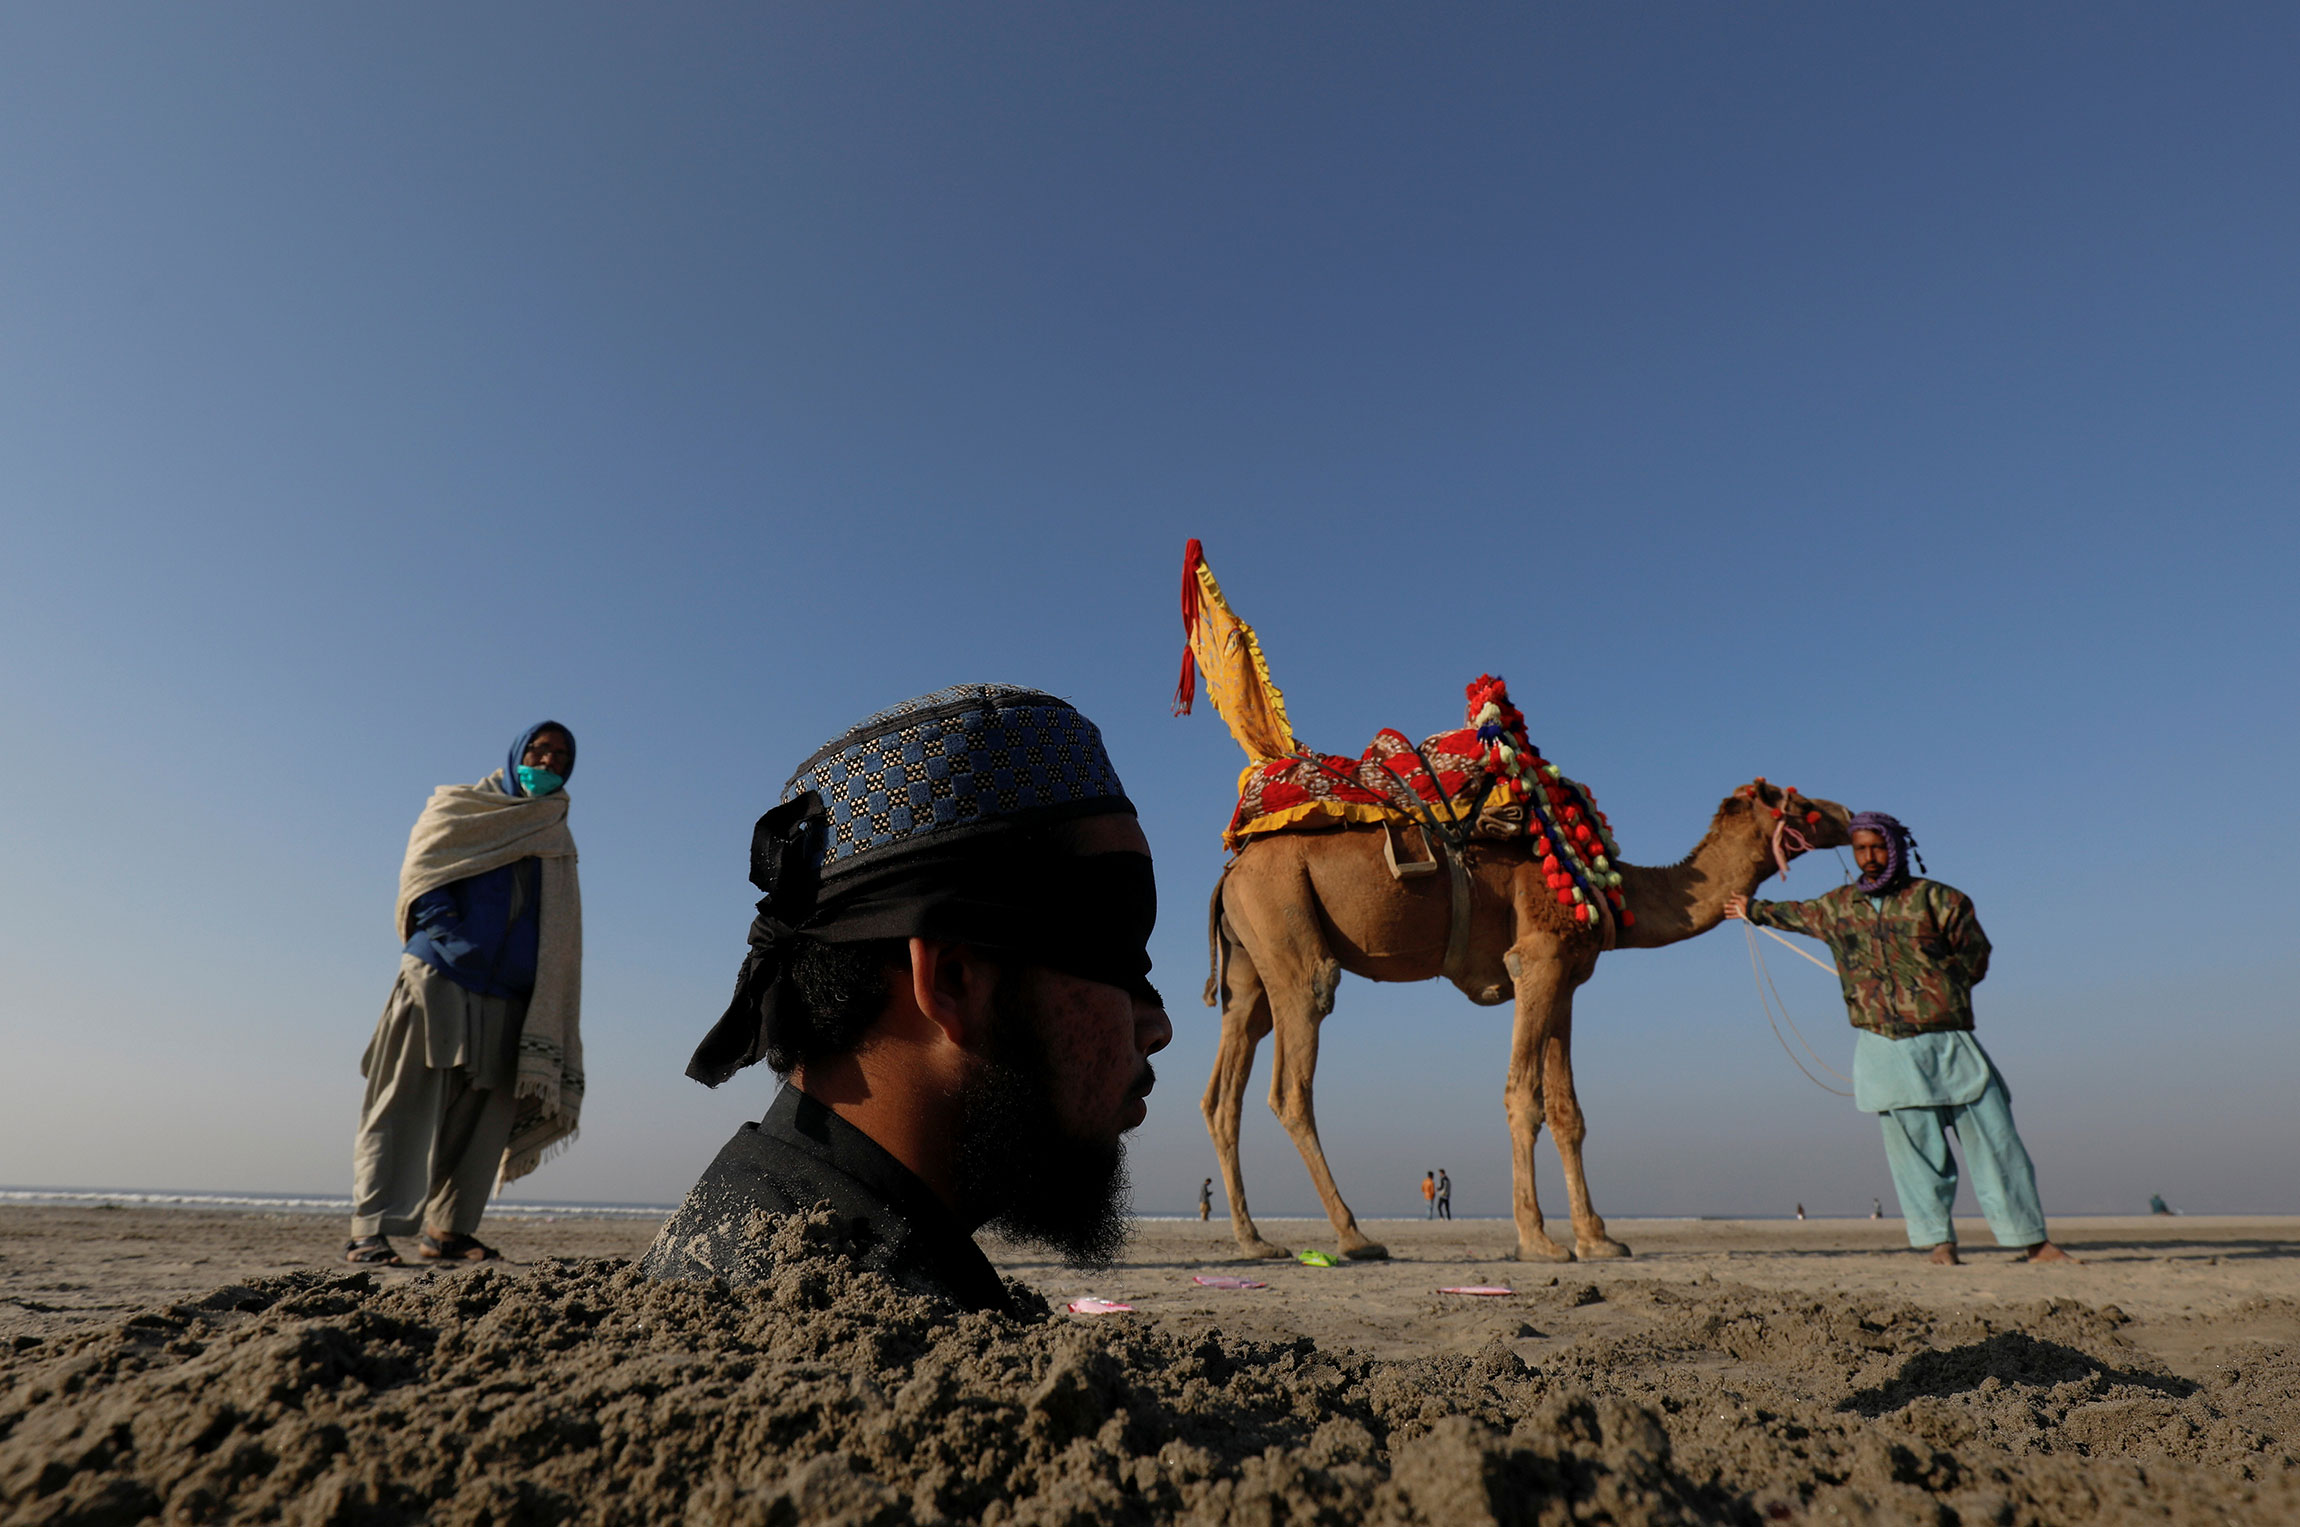 Карачи, Пакистан. Мужчина с завязанными глазами во время солнечного затмения погружен в песок: в этом регионе считают, что закапывание в песок во время затмения дает возможность исцелиться
